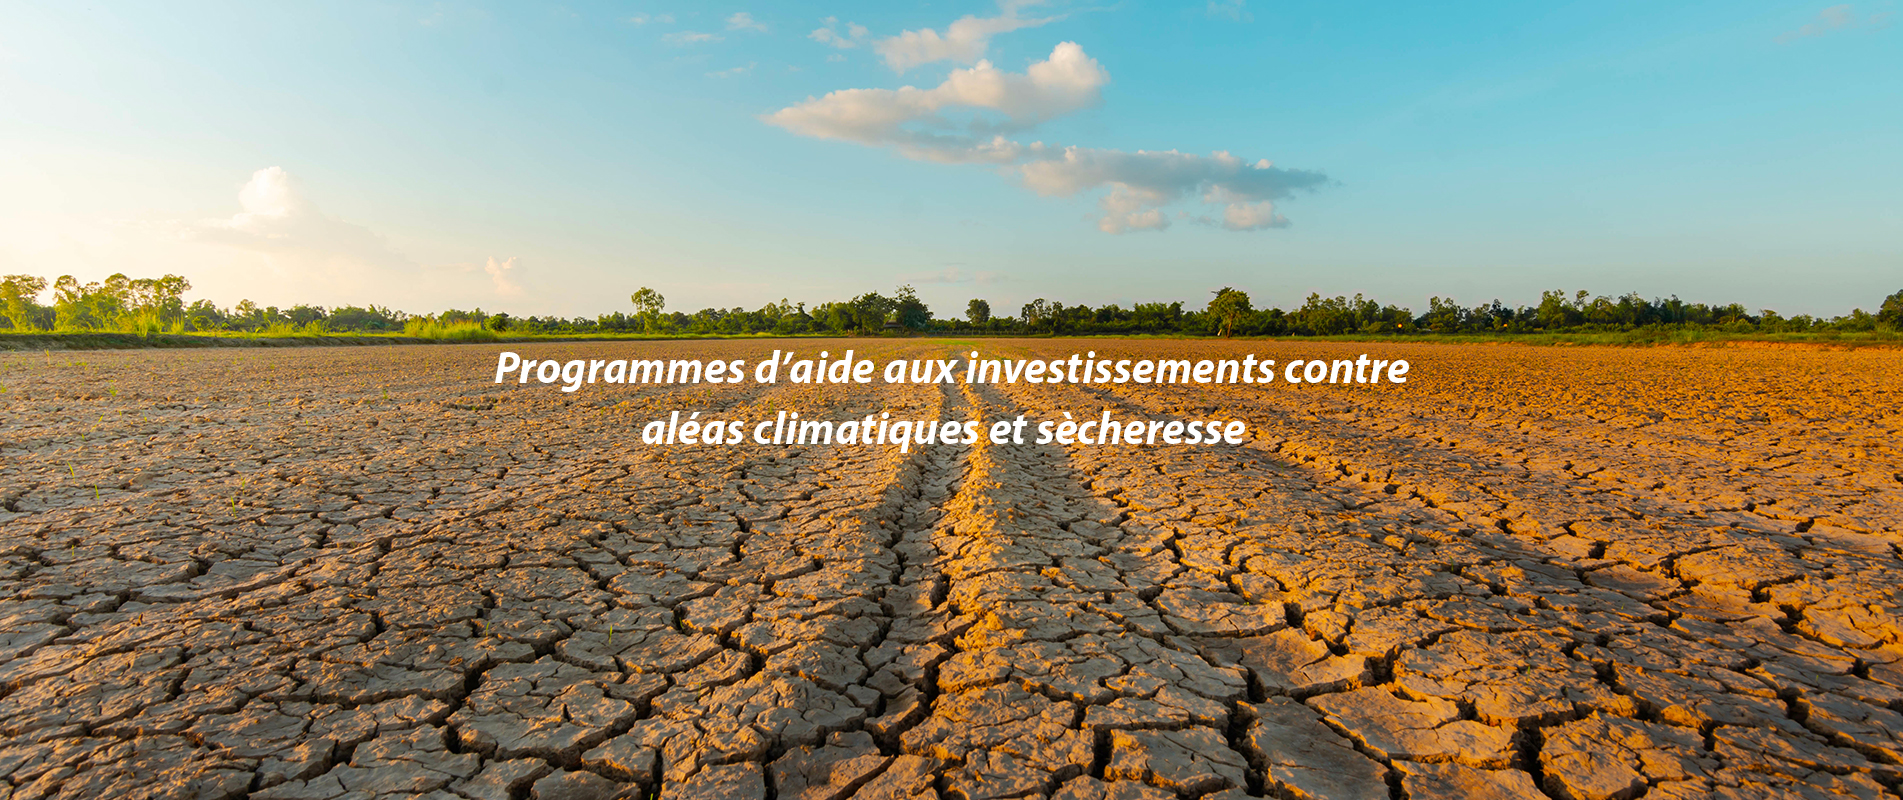 Programmes d’aide aux investissements contre aléas climatiques et sècheresse